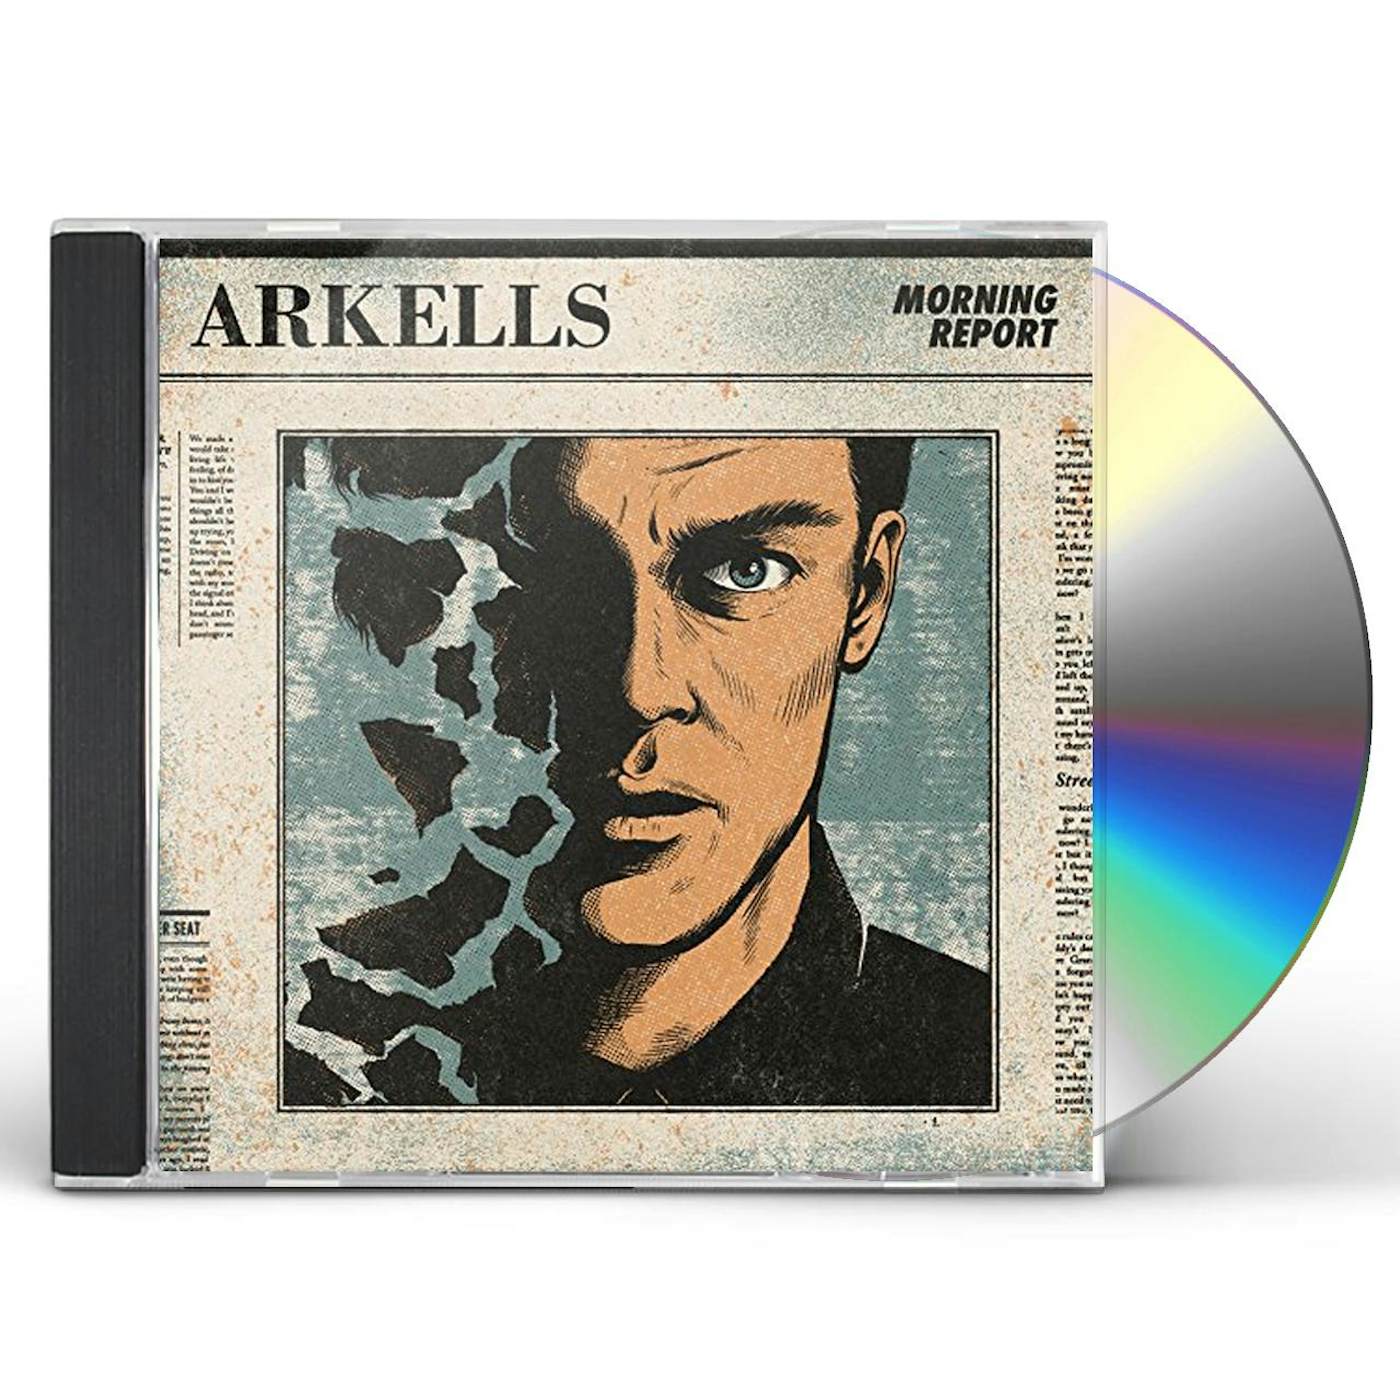 Arkells MORNING REPORT CD